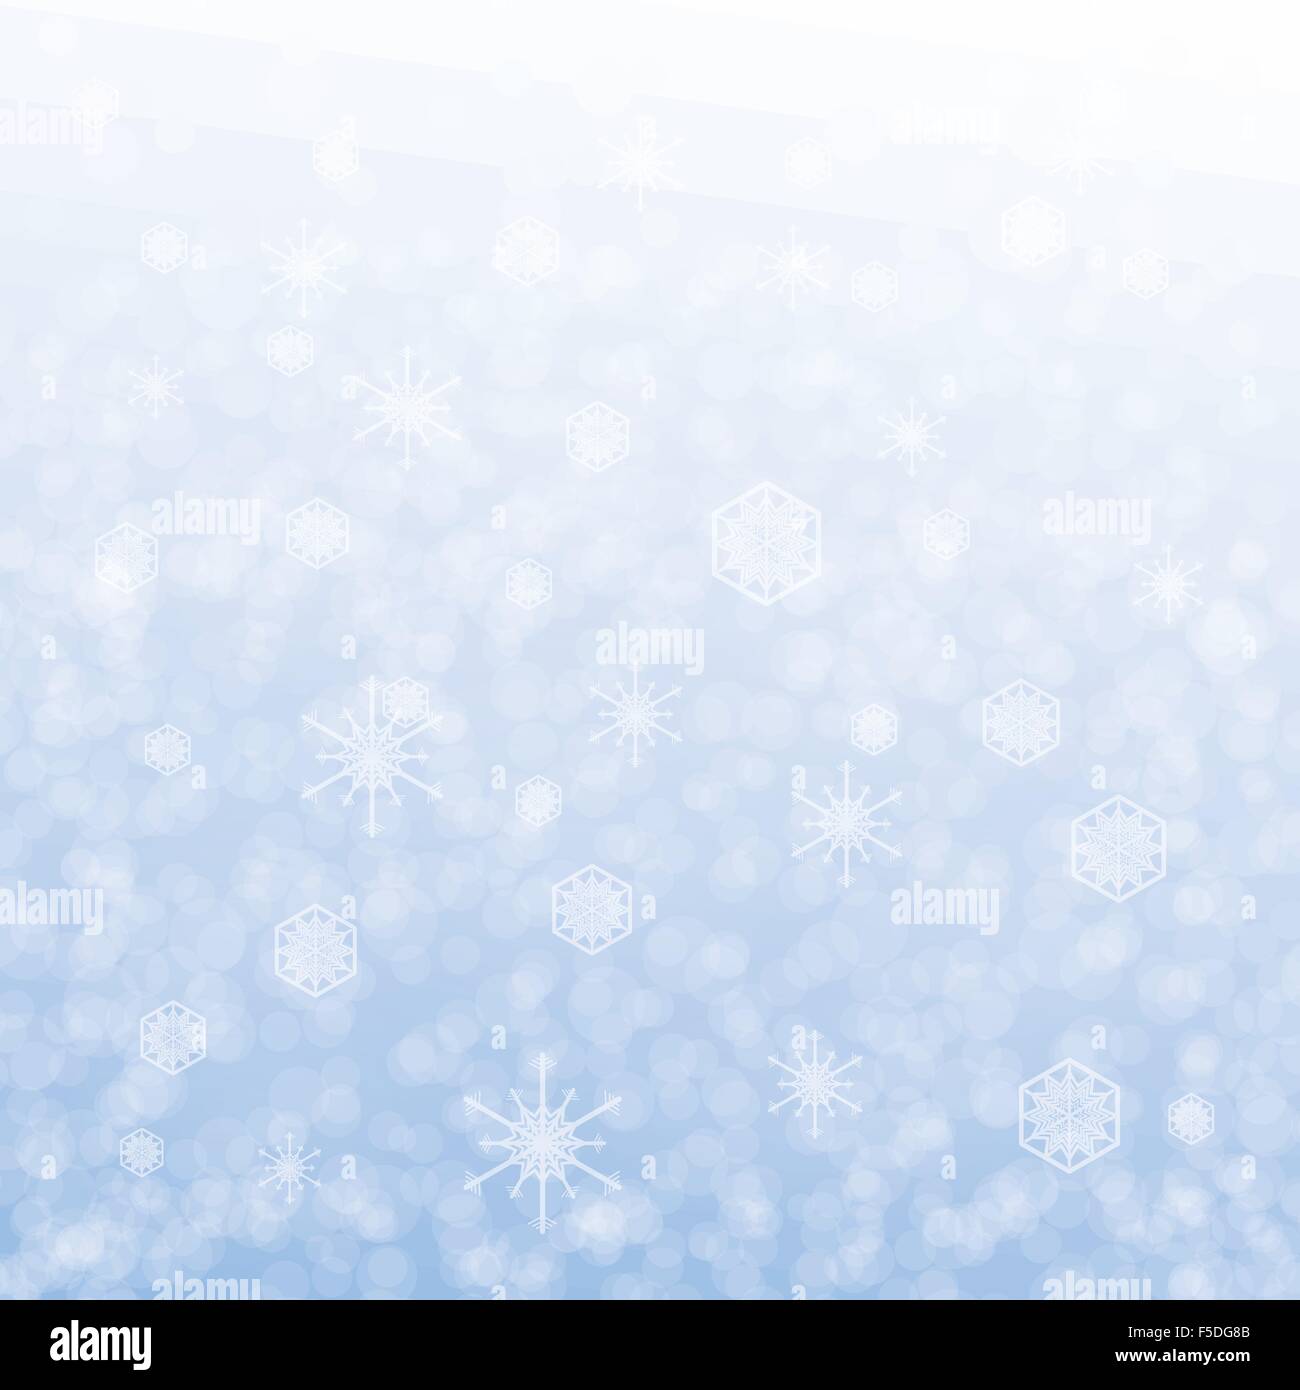 Weihnachtskarte Design mit Schneeflocke auf blauem Hintergrund Stock Vektor